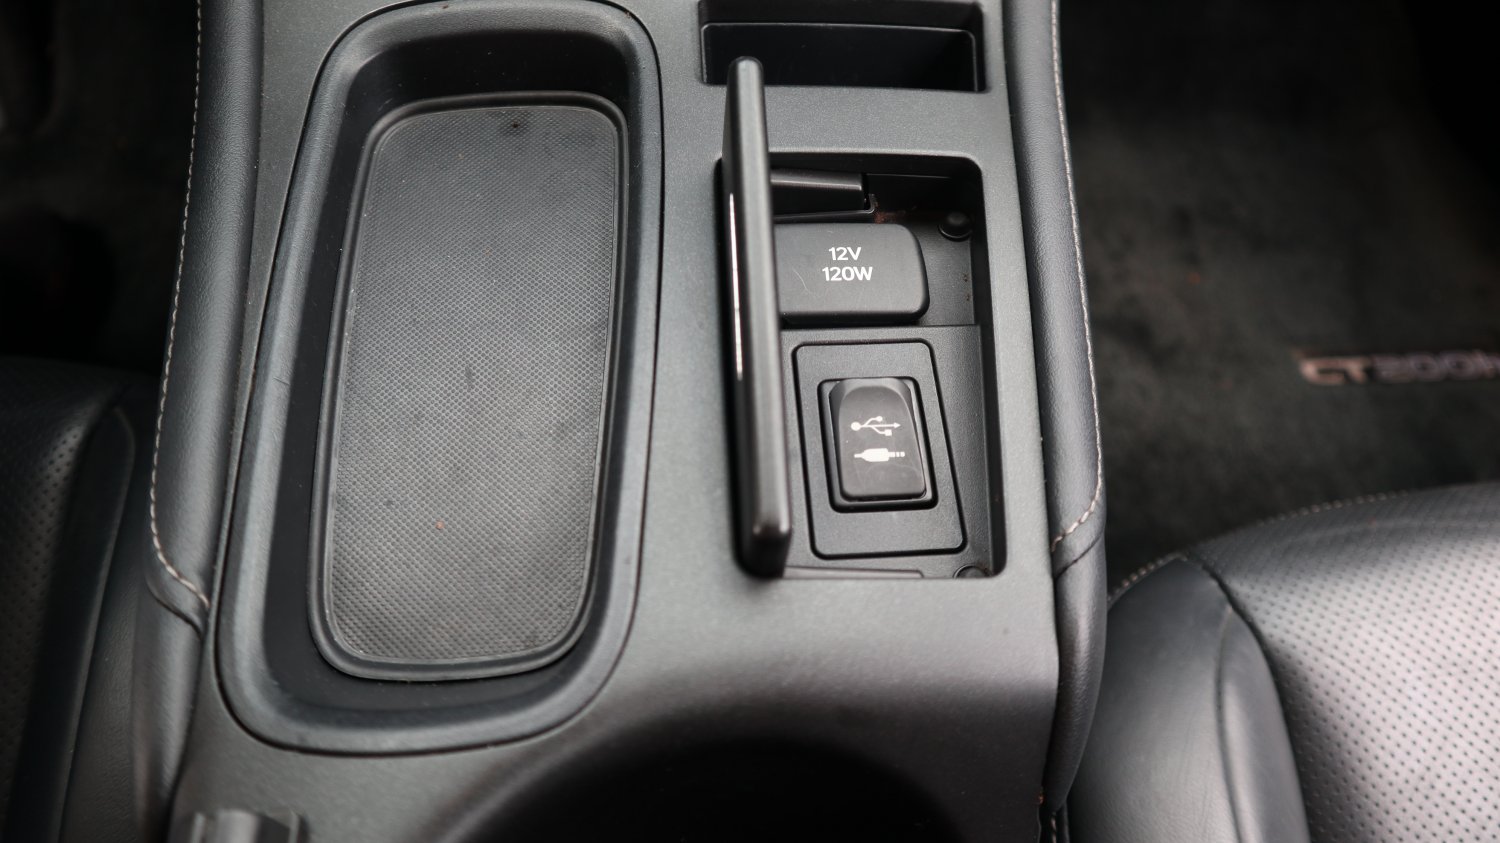 Lexus 凌志 ／ CT 系列 ／ 2014年 ／ 2014年 Lexus CT200h 白色 油電混合 凌志中古車 ／ MG車庫(台南)